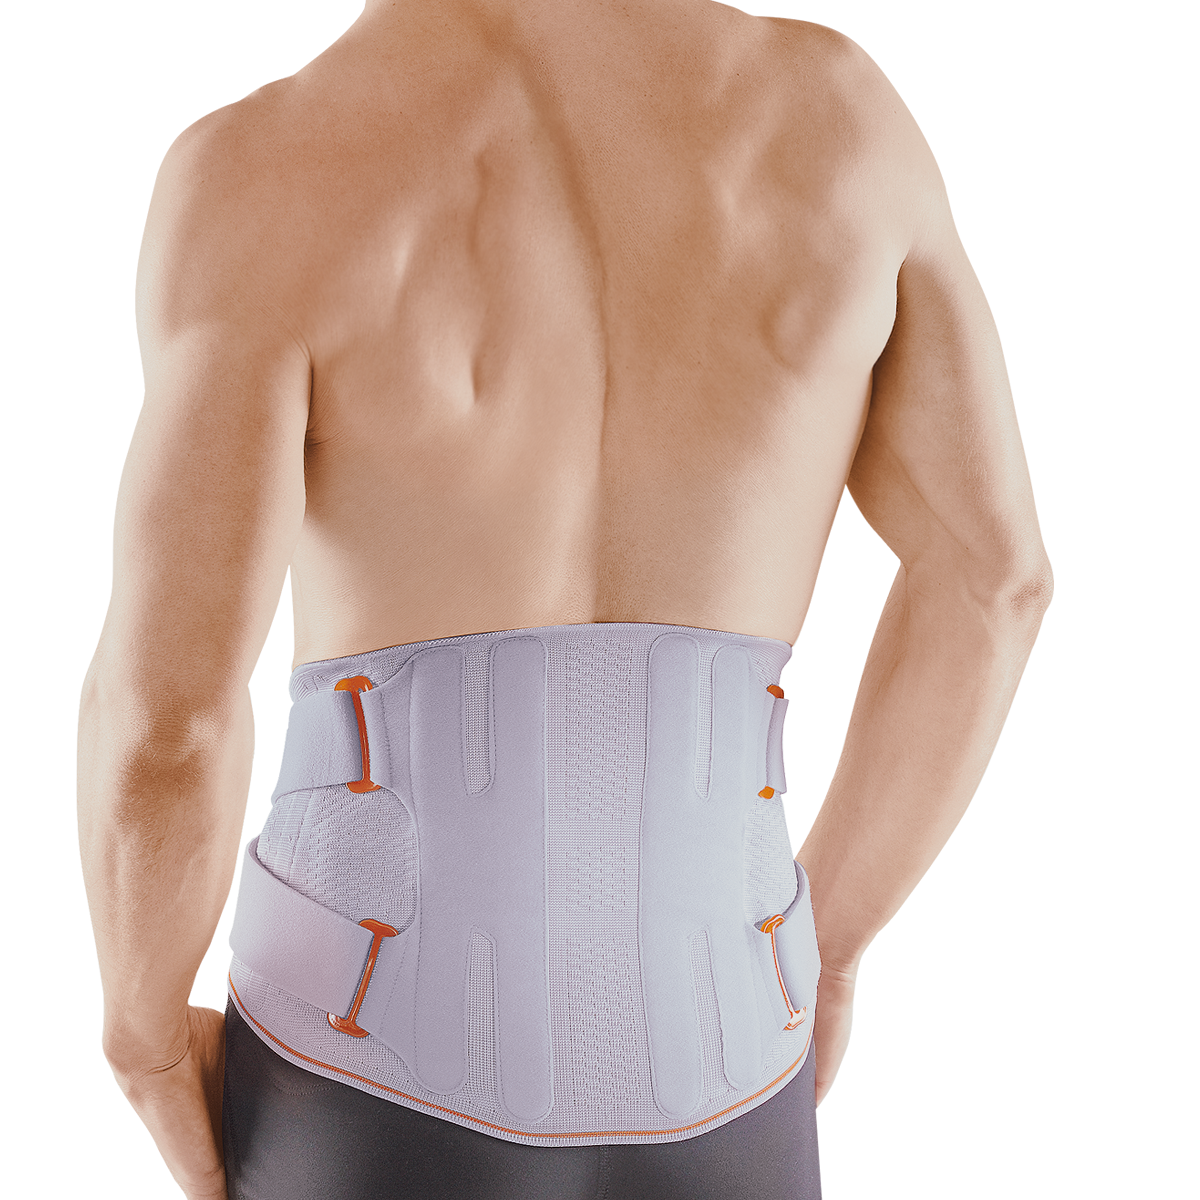 Adjustable Waist Support Belt Breathable Lower Back Brace Spine